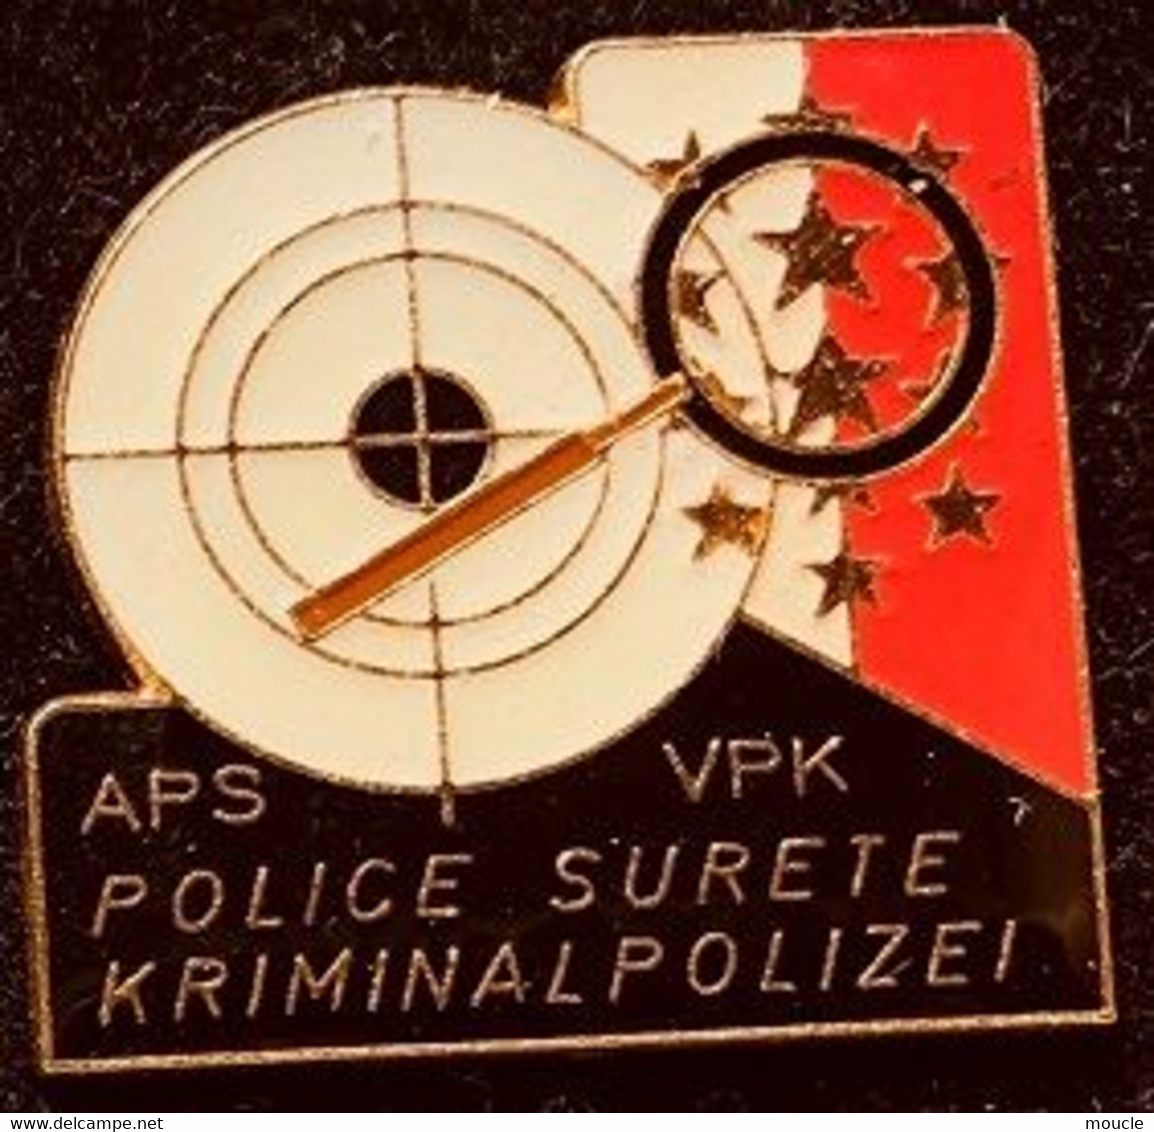 POLICE SURETE VALAISANNE - WALLIS KRIMNAL POLIZEI - SUISSE -  POLICIA - SCHWEIZ - SWITZERLAND - APS - VPK - LOUPE-  (27) - Polizei